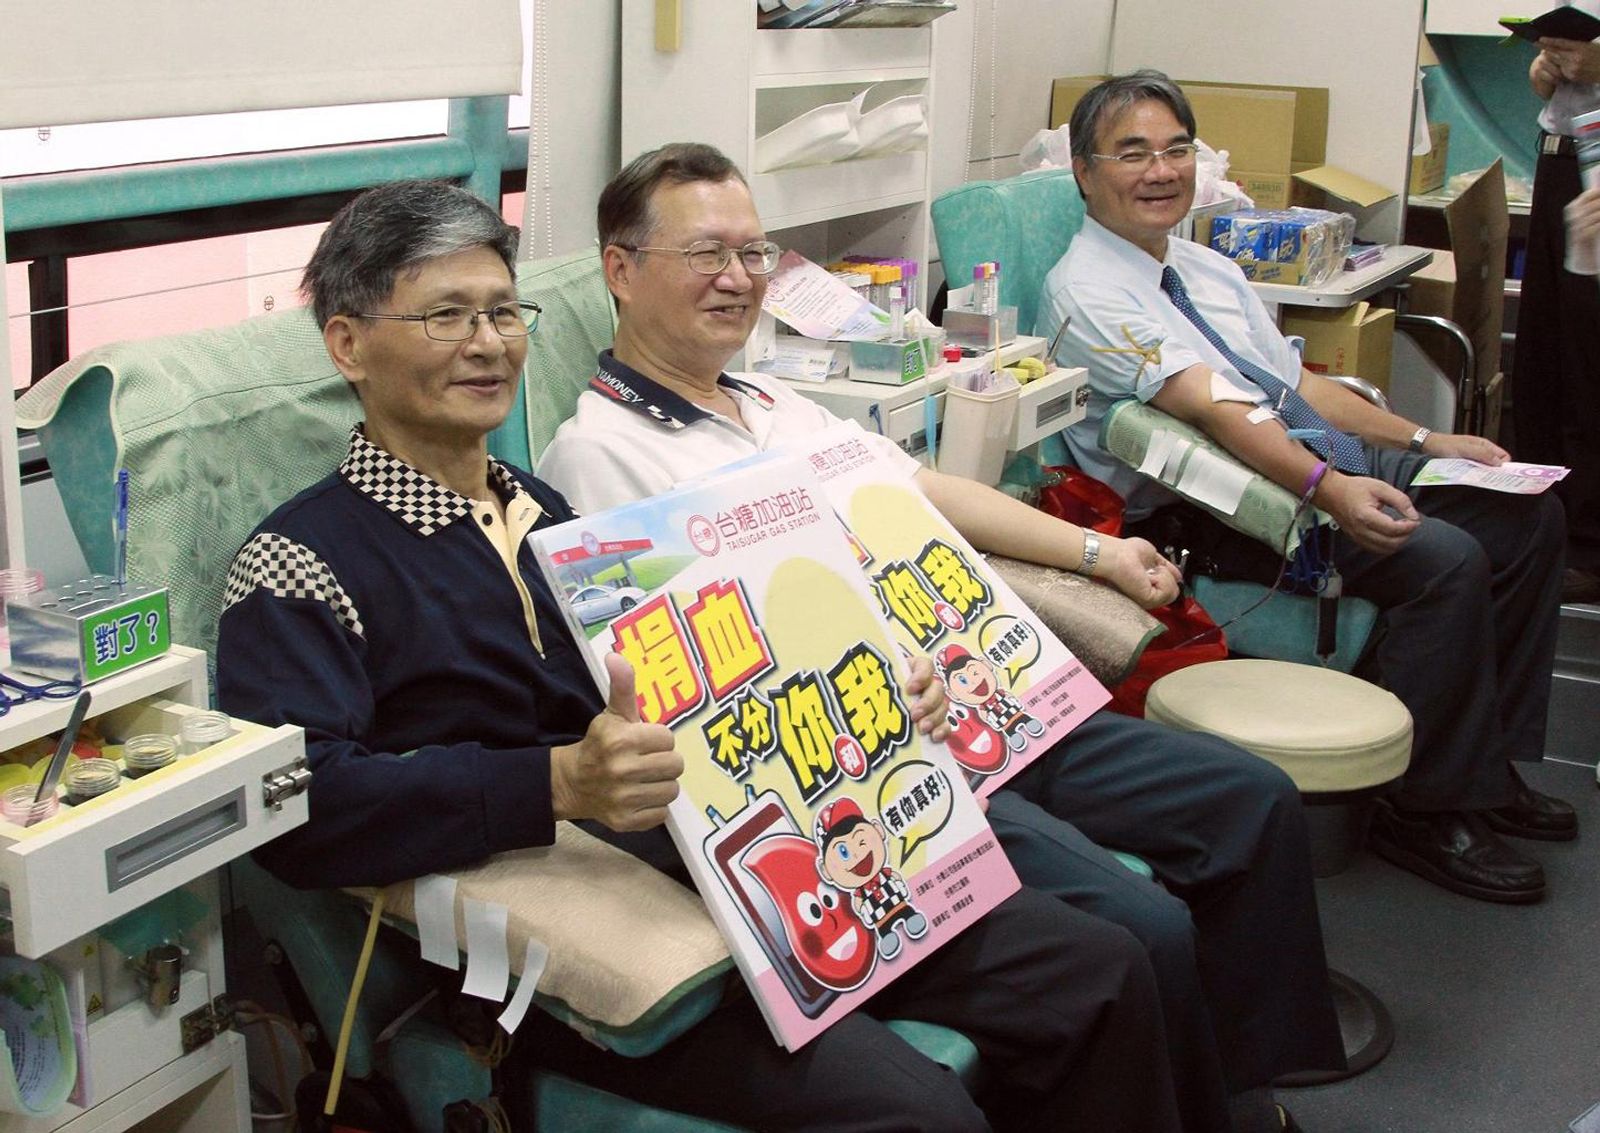 台糖公司副總經理洪火文 ( 中 ) 及油品事業部執行長徐繼聖 ( 左 ) 每年皆挽袖響應捐血活動